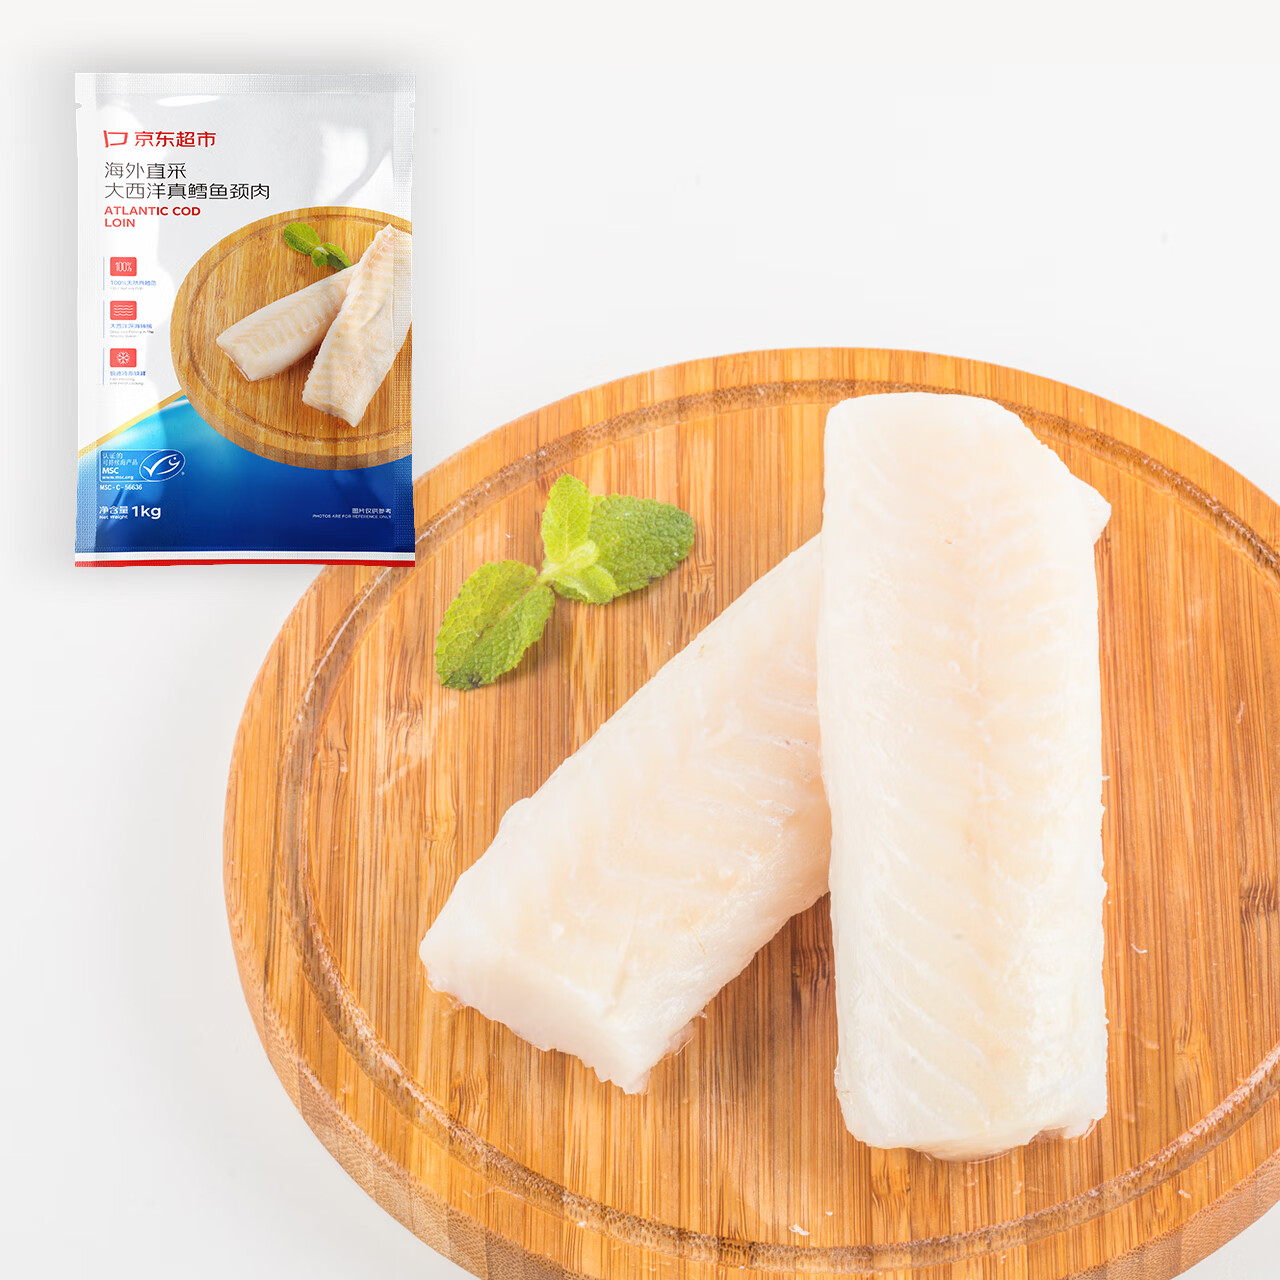 京东超市 海外直采 大西洋真鳕鱼颈肉1kg 98.99元